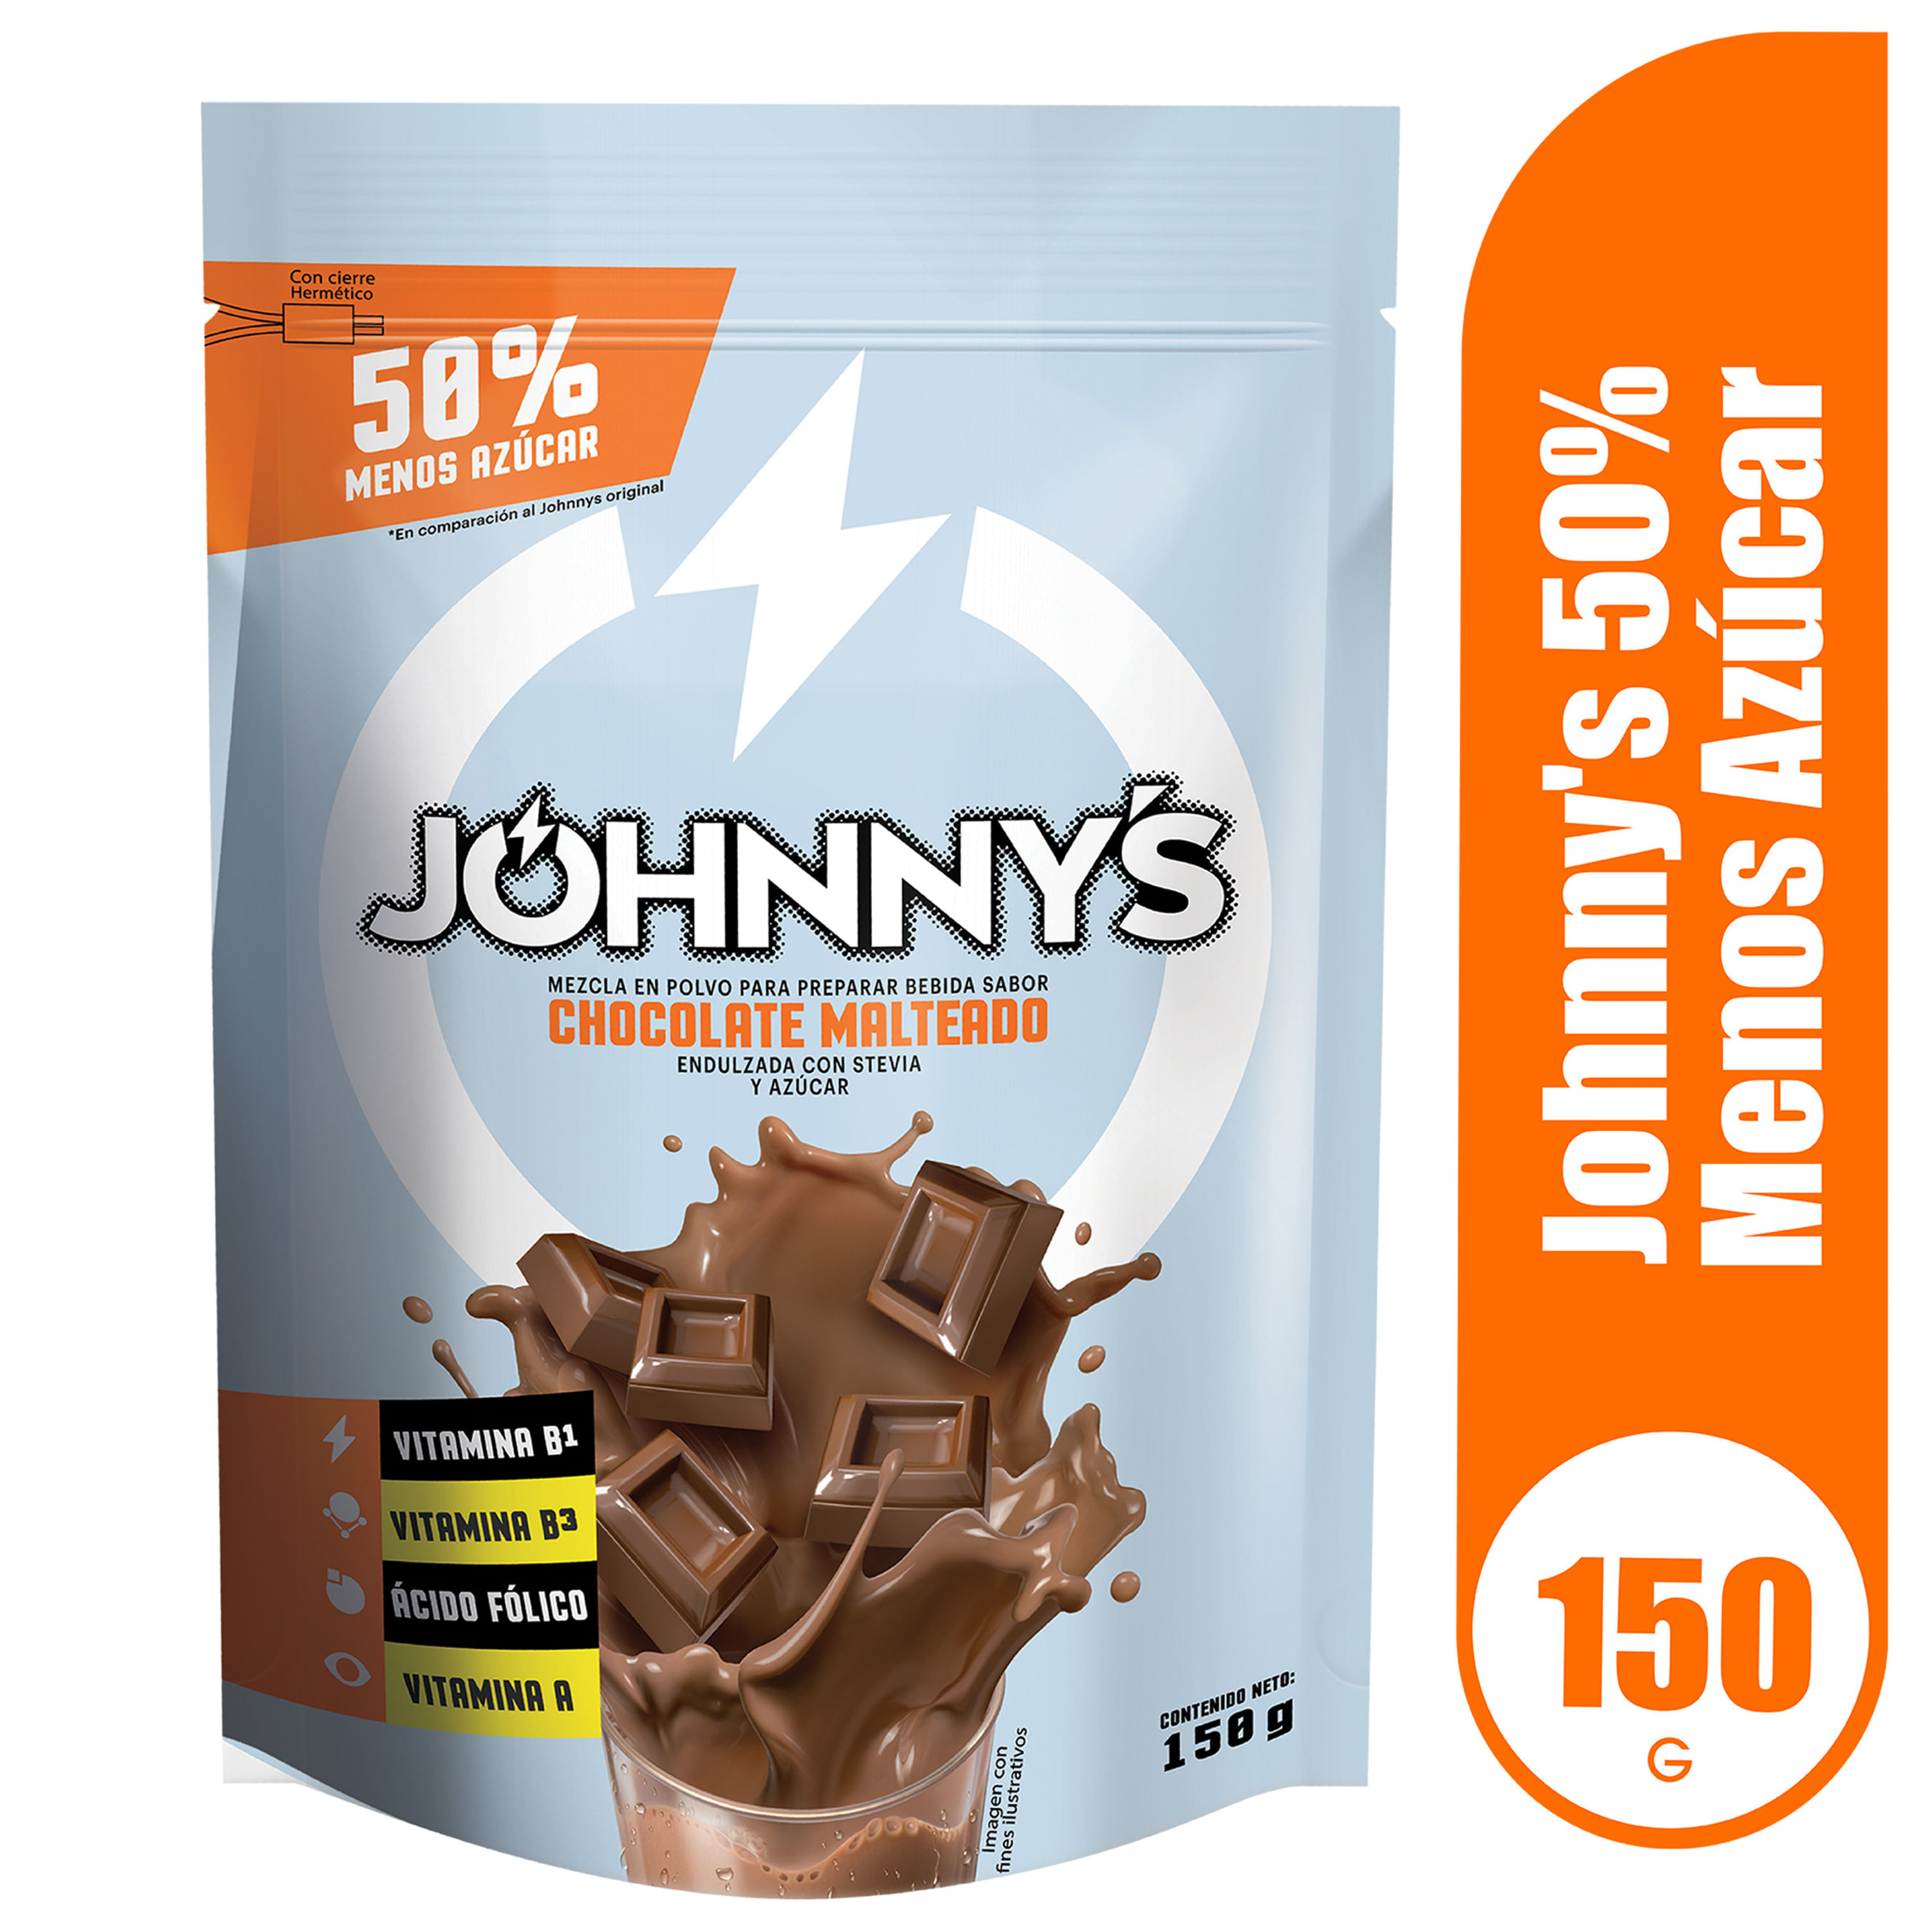 Chocolate-en-polvo-Johnny-s-50-menos-az-car-150-g-1-74584